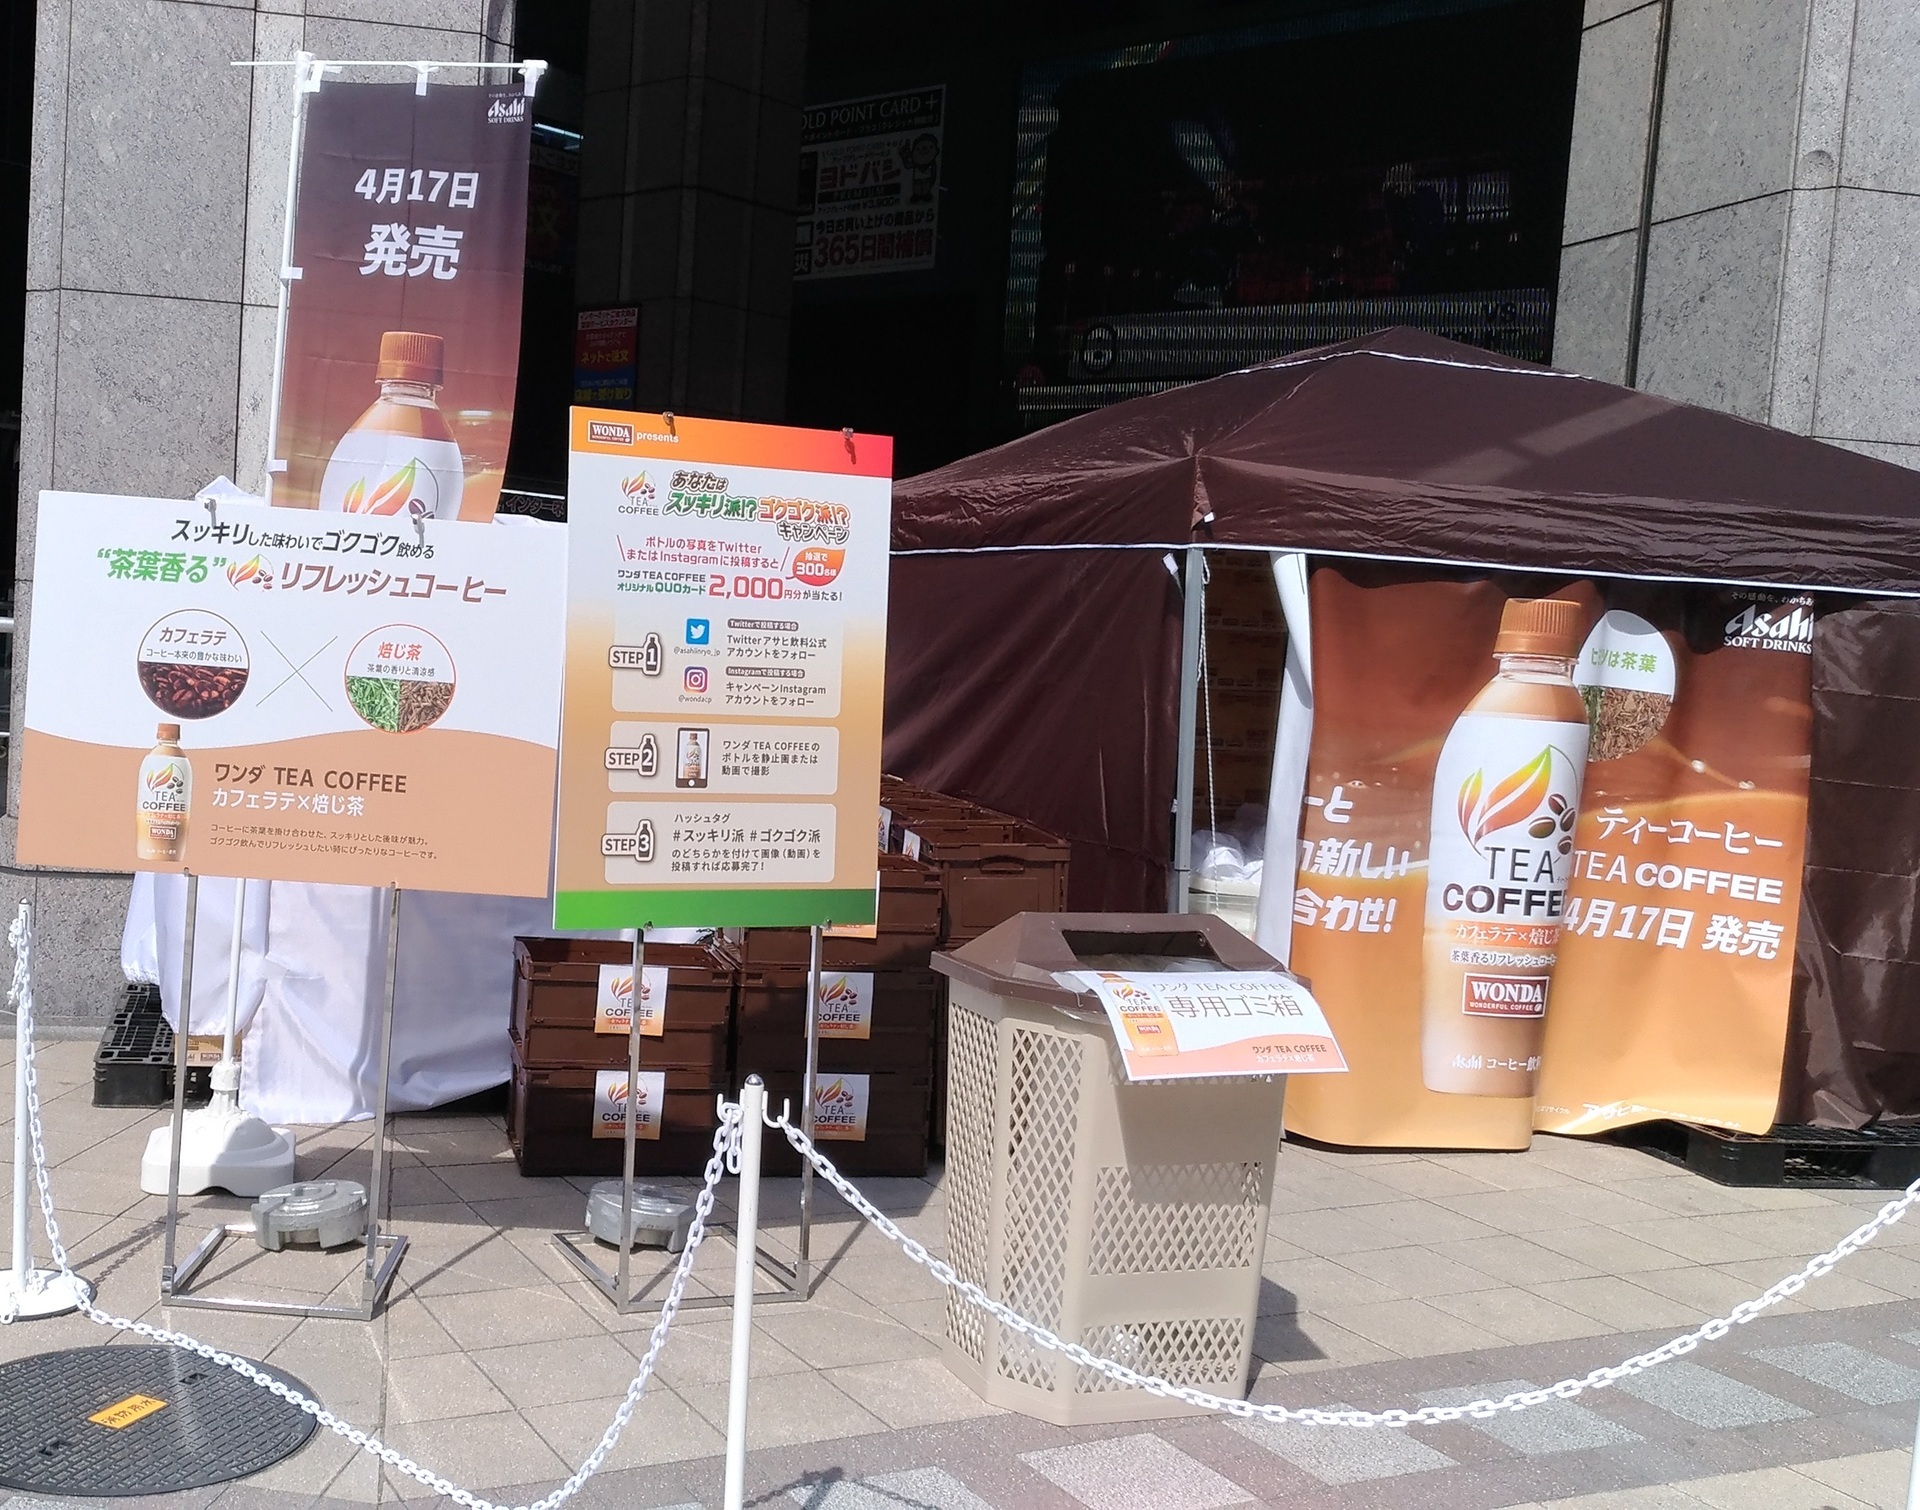 ワンダコーヒー キャンペーンヨドバシ梅田イベント実施されて 大阪市北区中津 賃貸マンションで一人暮らし始めてみました